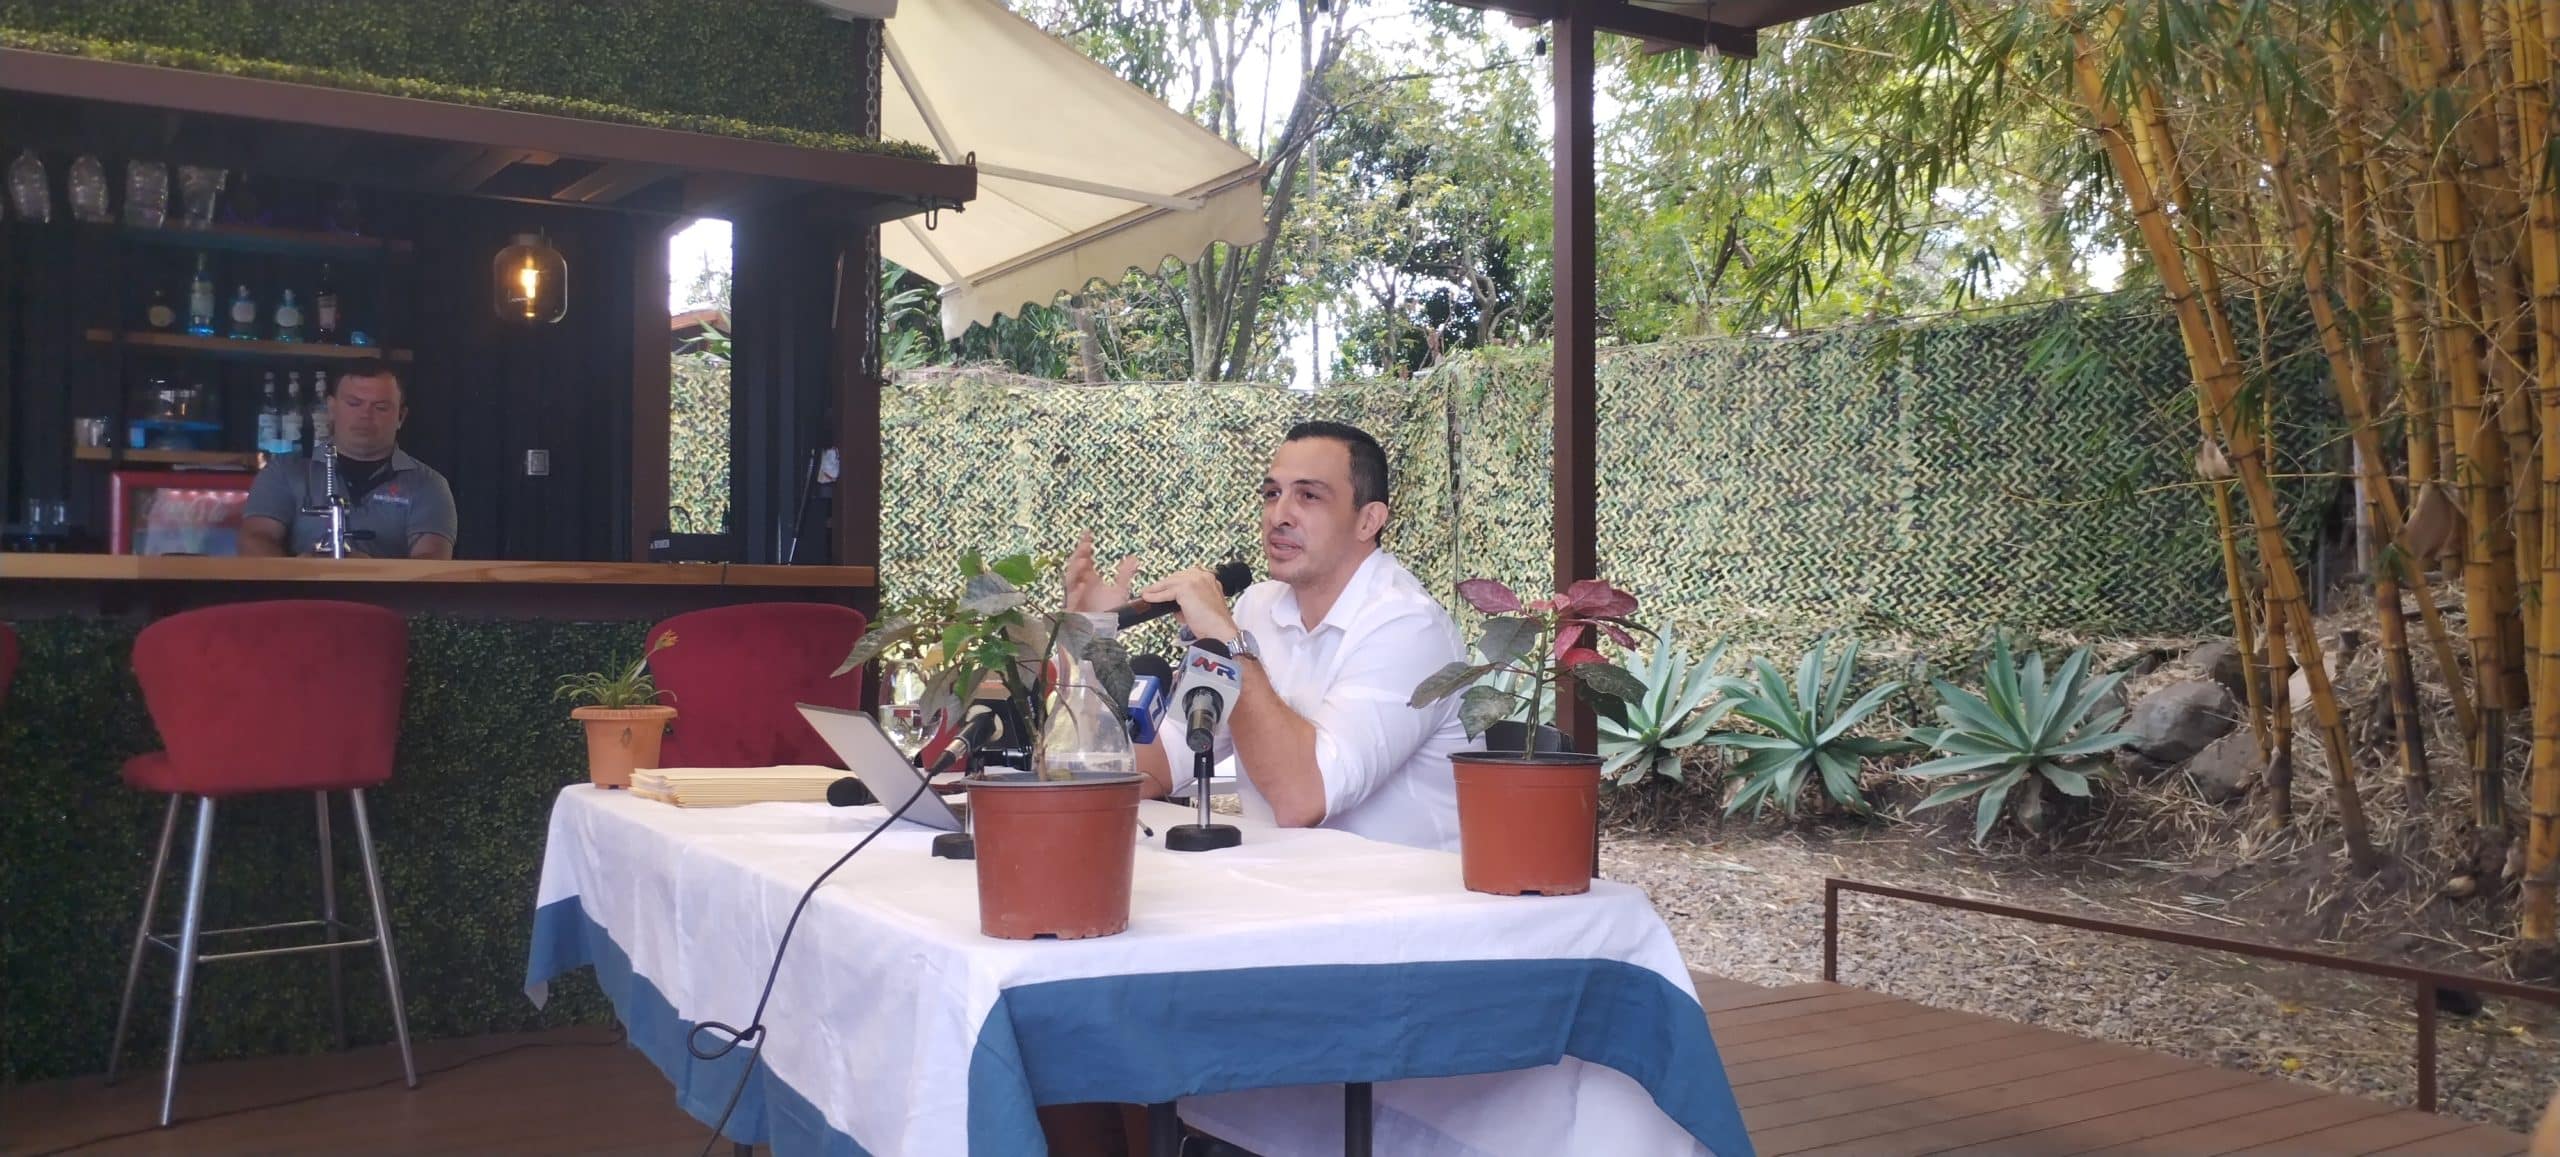 Exjerarca de Incofer no descarta postular su candidatura como alcalde de Escazú